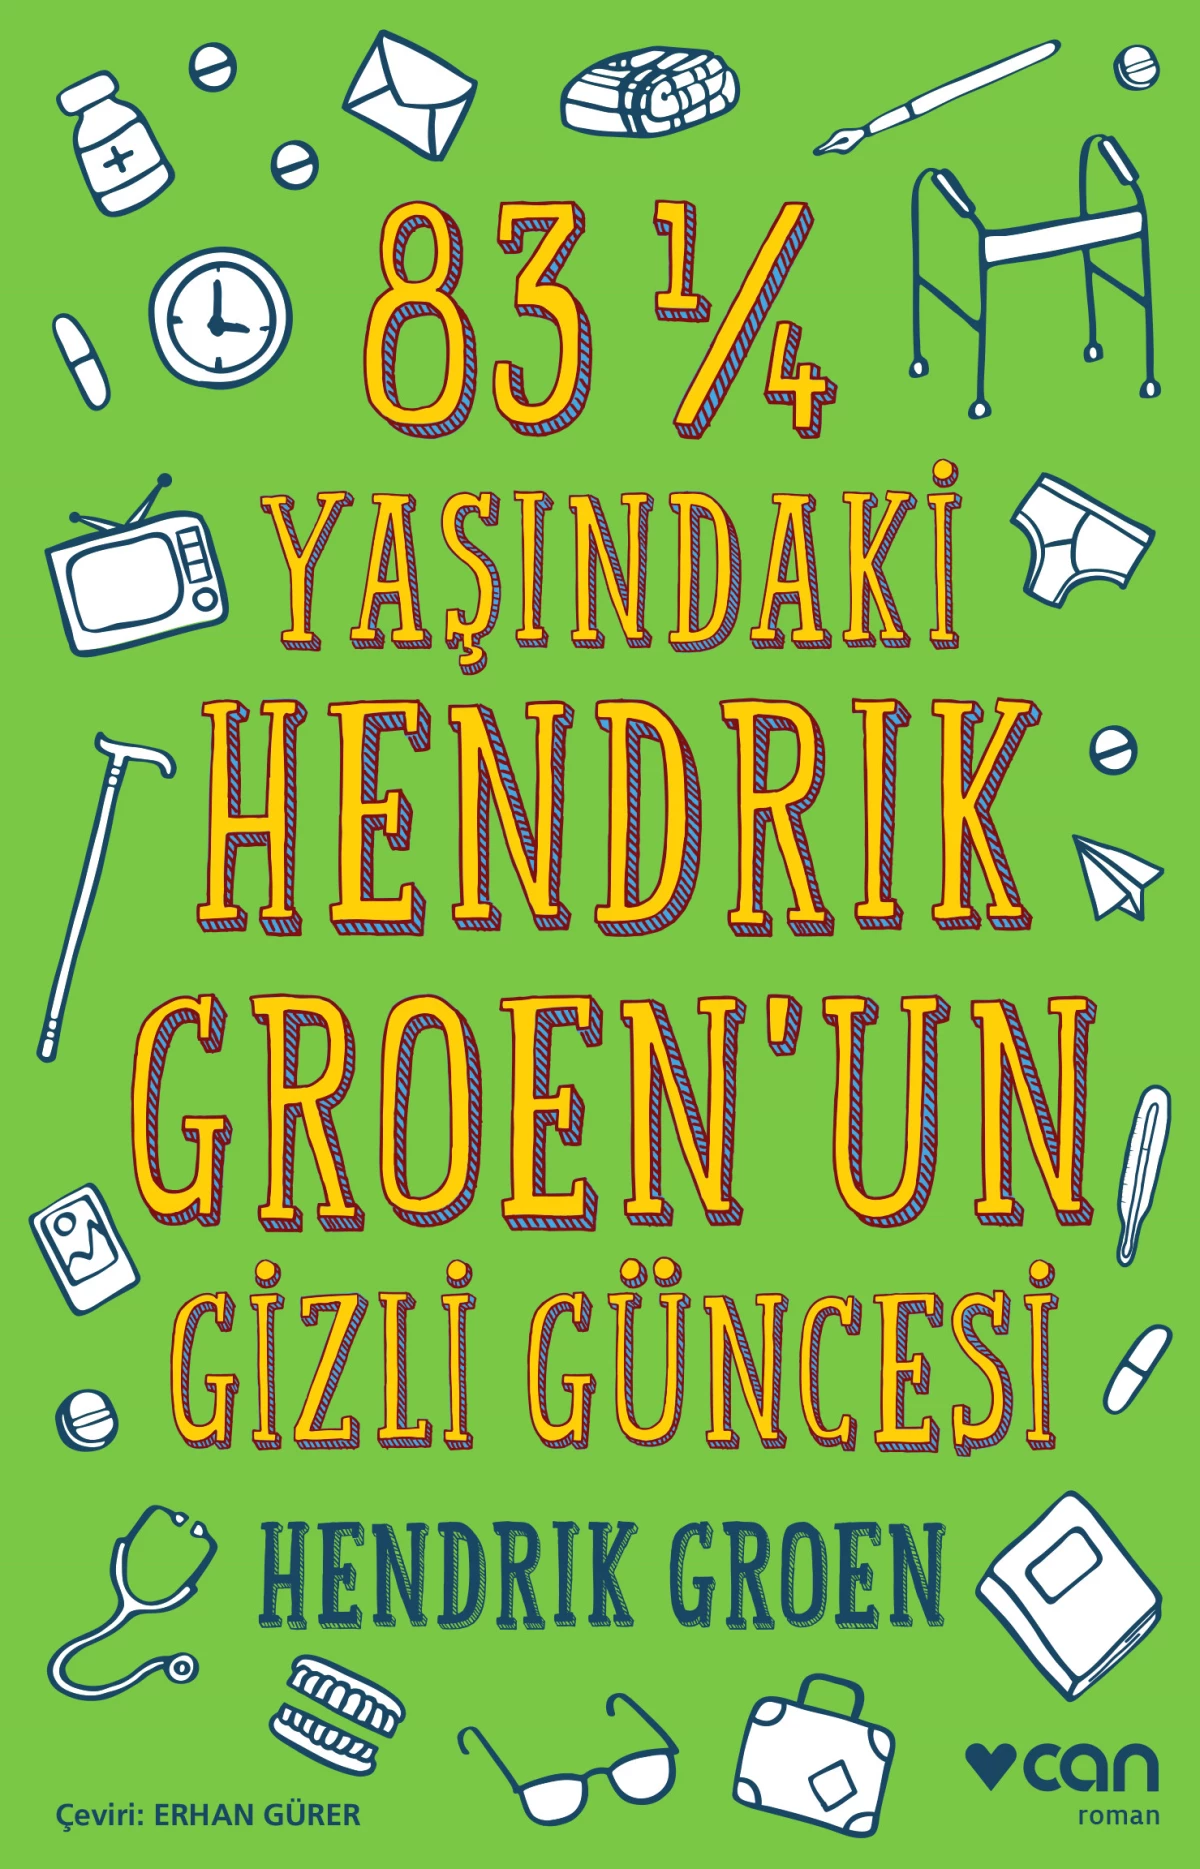 83 ¼ Yaşındaki Hendrik Groen\'un Gizli Güncesi!